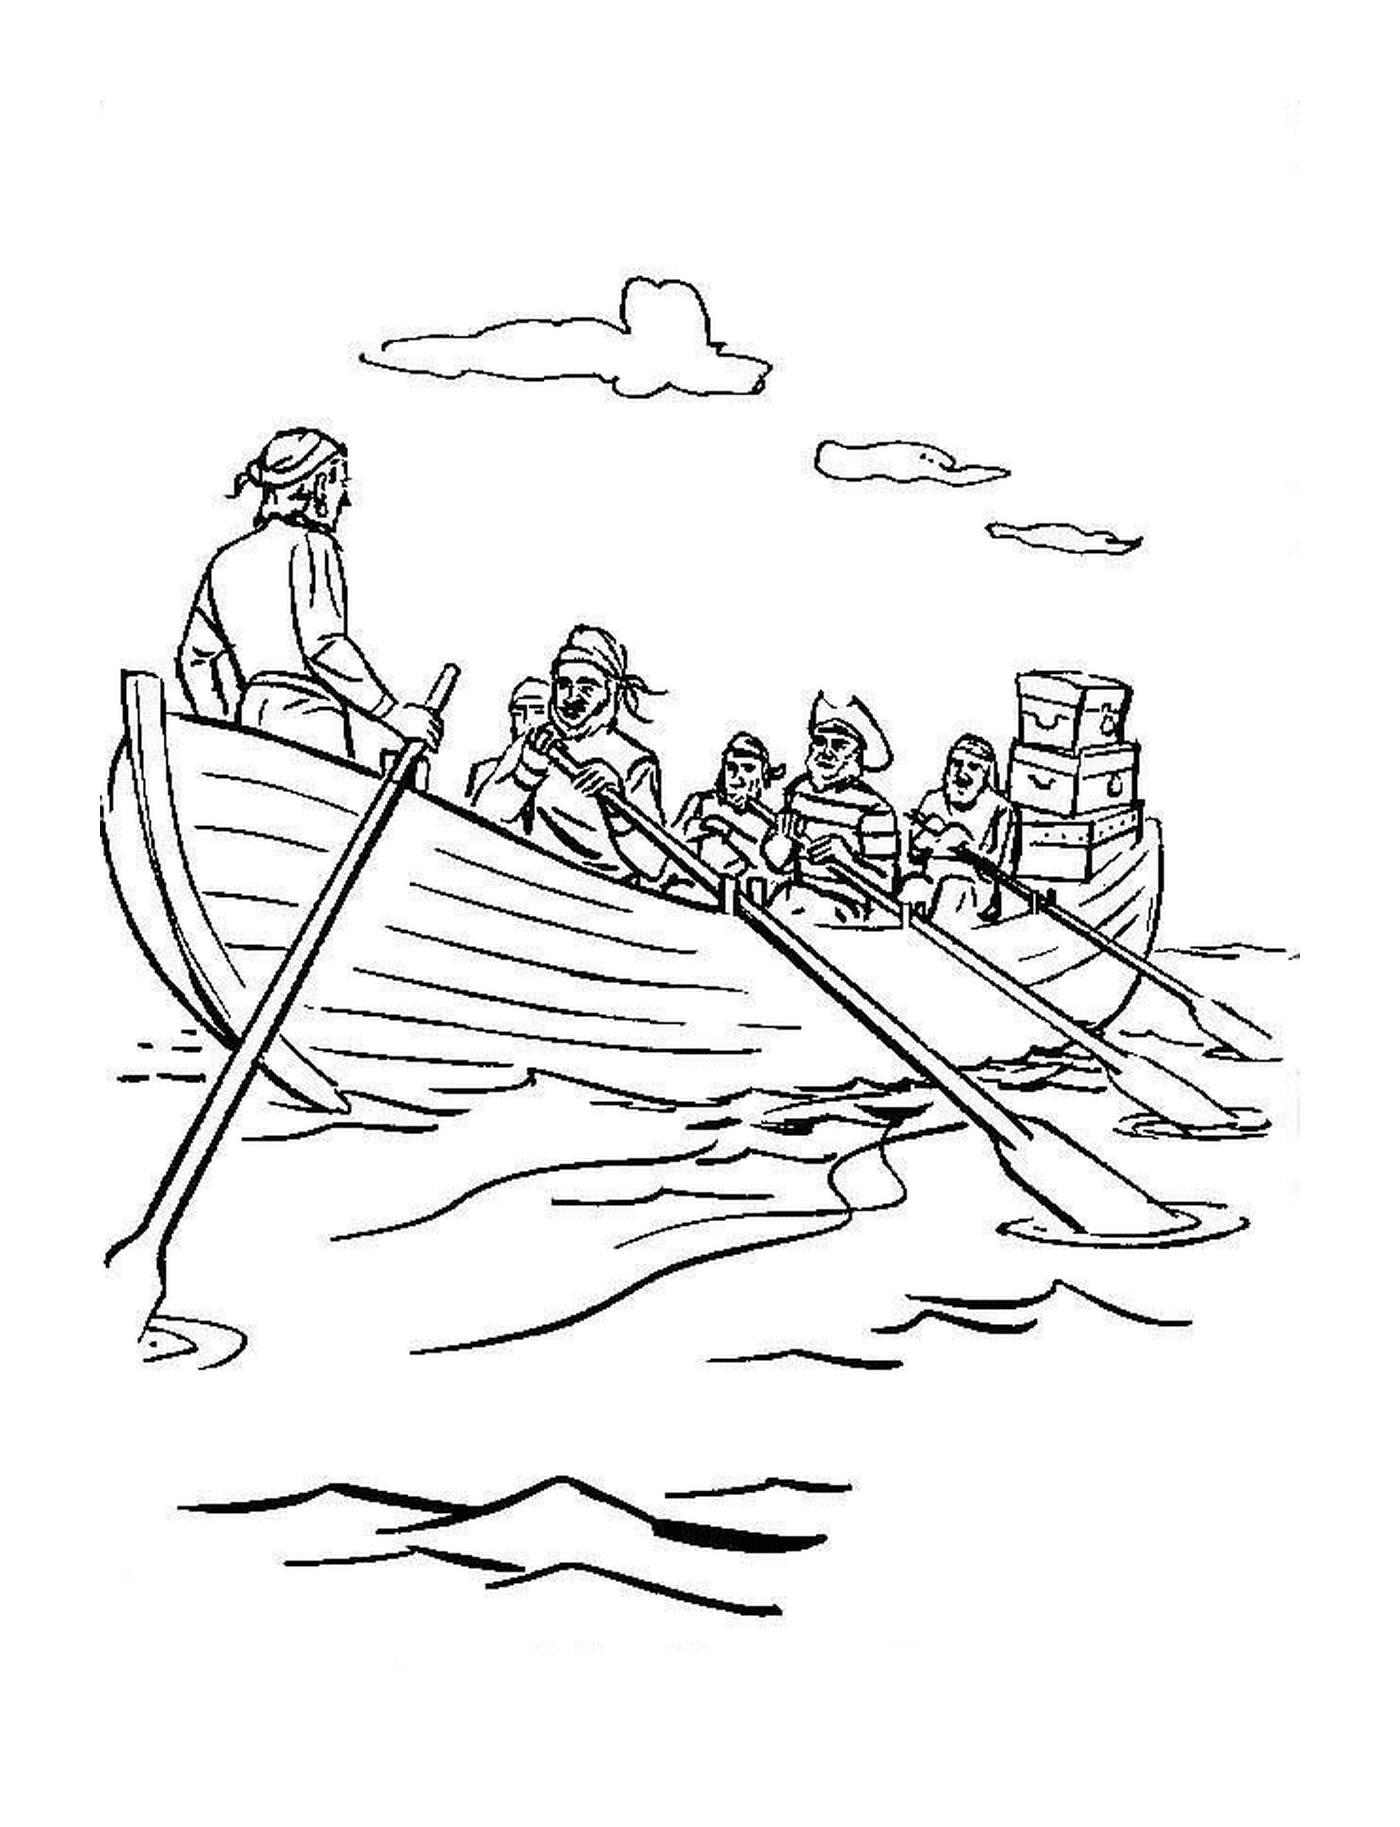  Ein Boot von Piraten, die auf dem Wasser segeln 